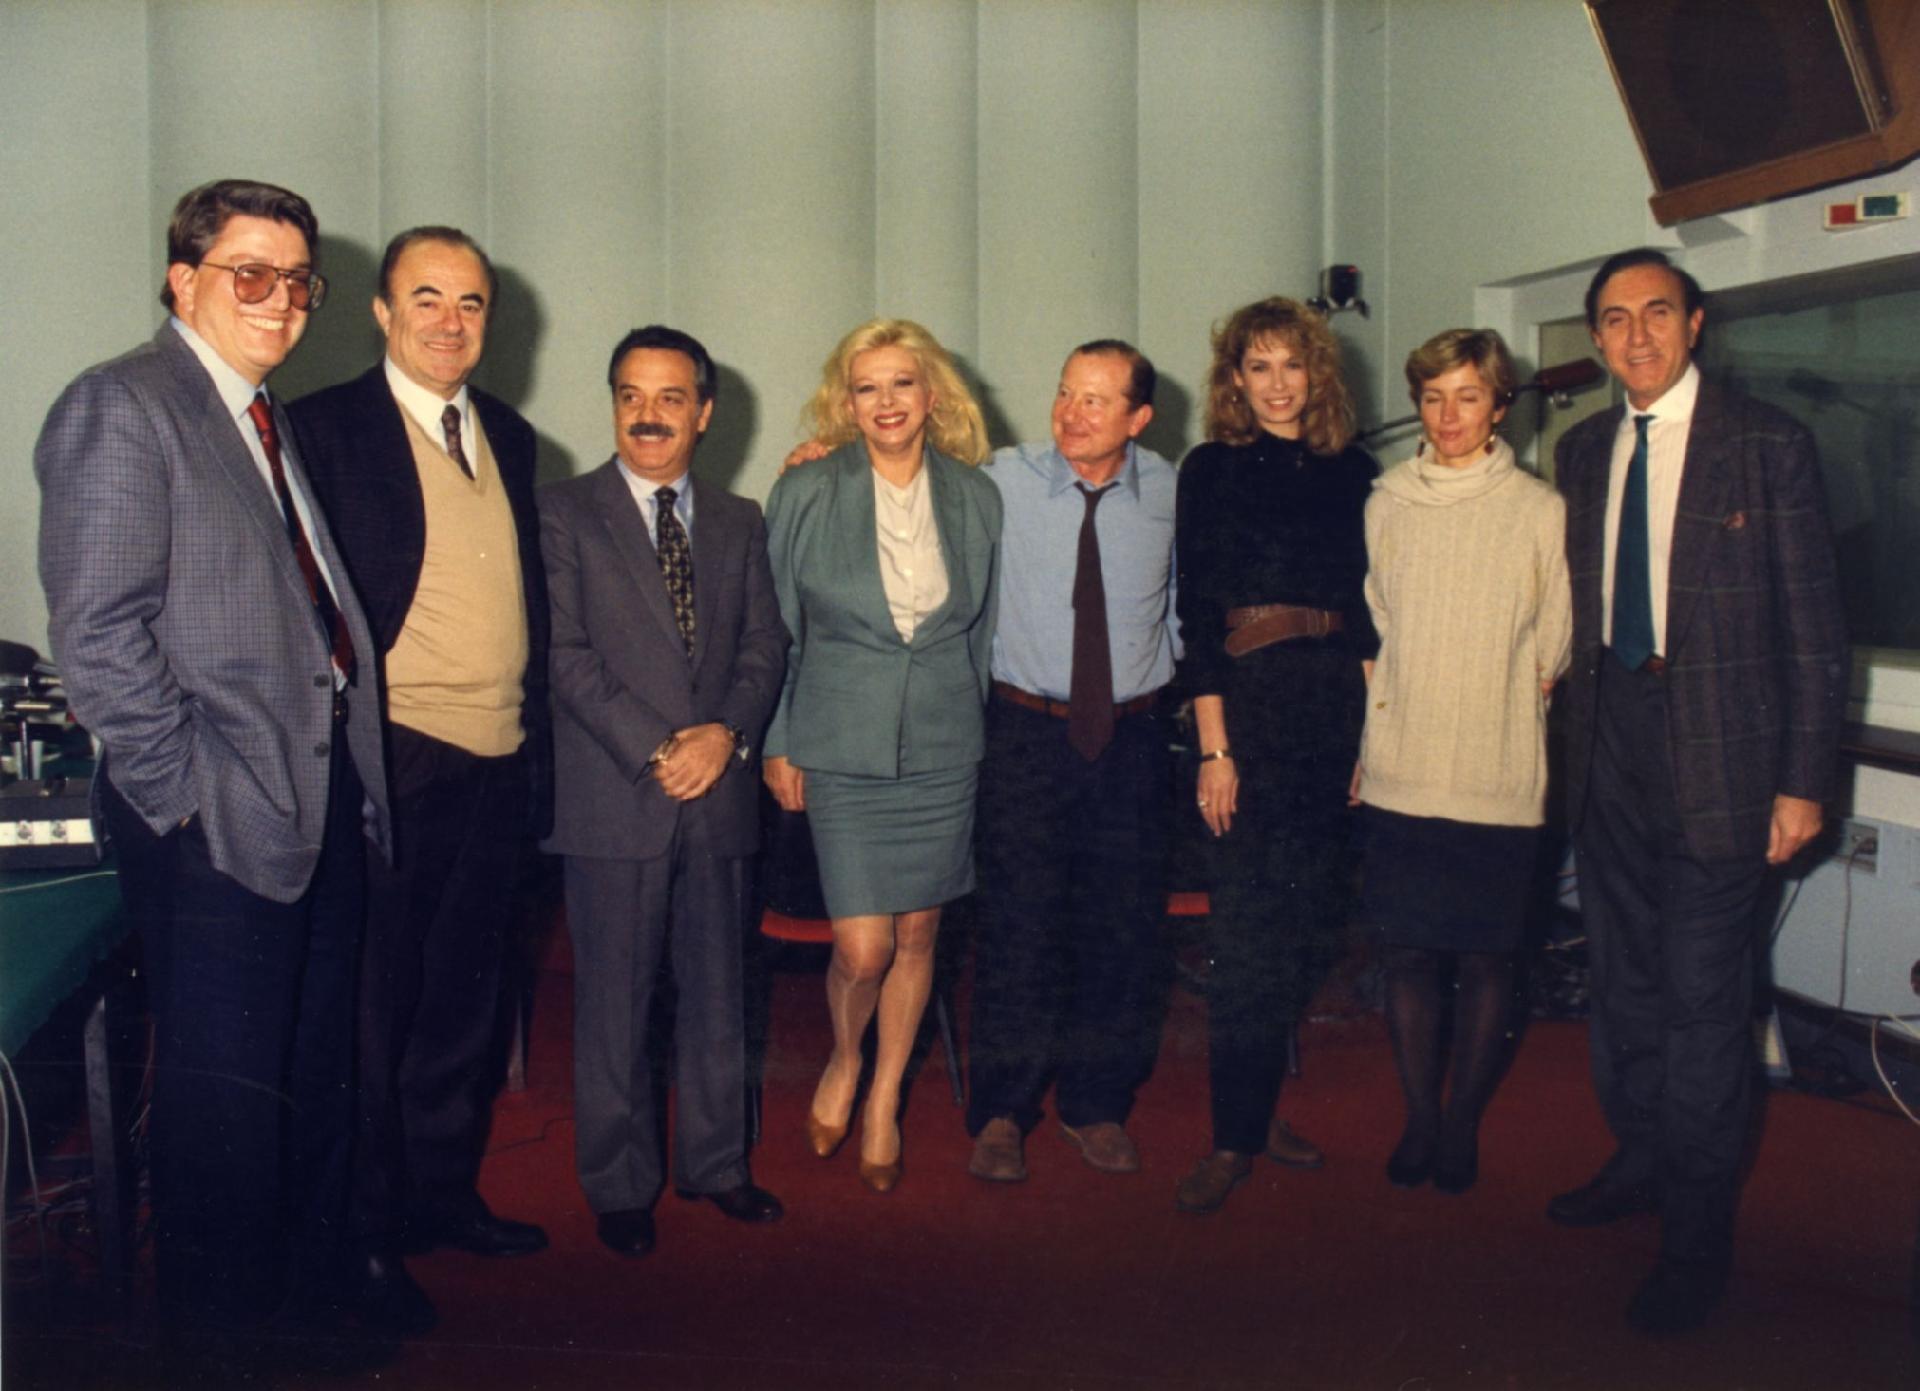 Gianni Bisiach con Arrigo Petacco, Sandra Milo, Pippo Baudo e altri a &quot;Radio anch&apos;io TV&quot; nello studio 8 di via Asiago n. 10 a Roma nel 1991